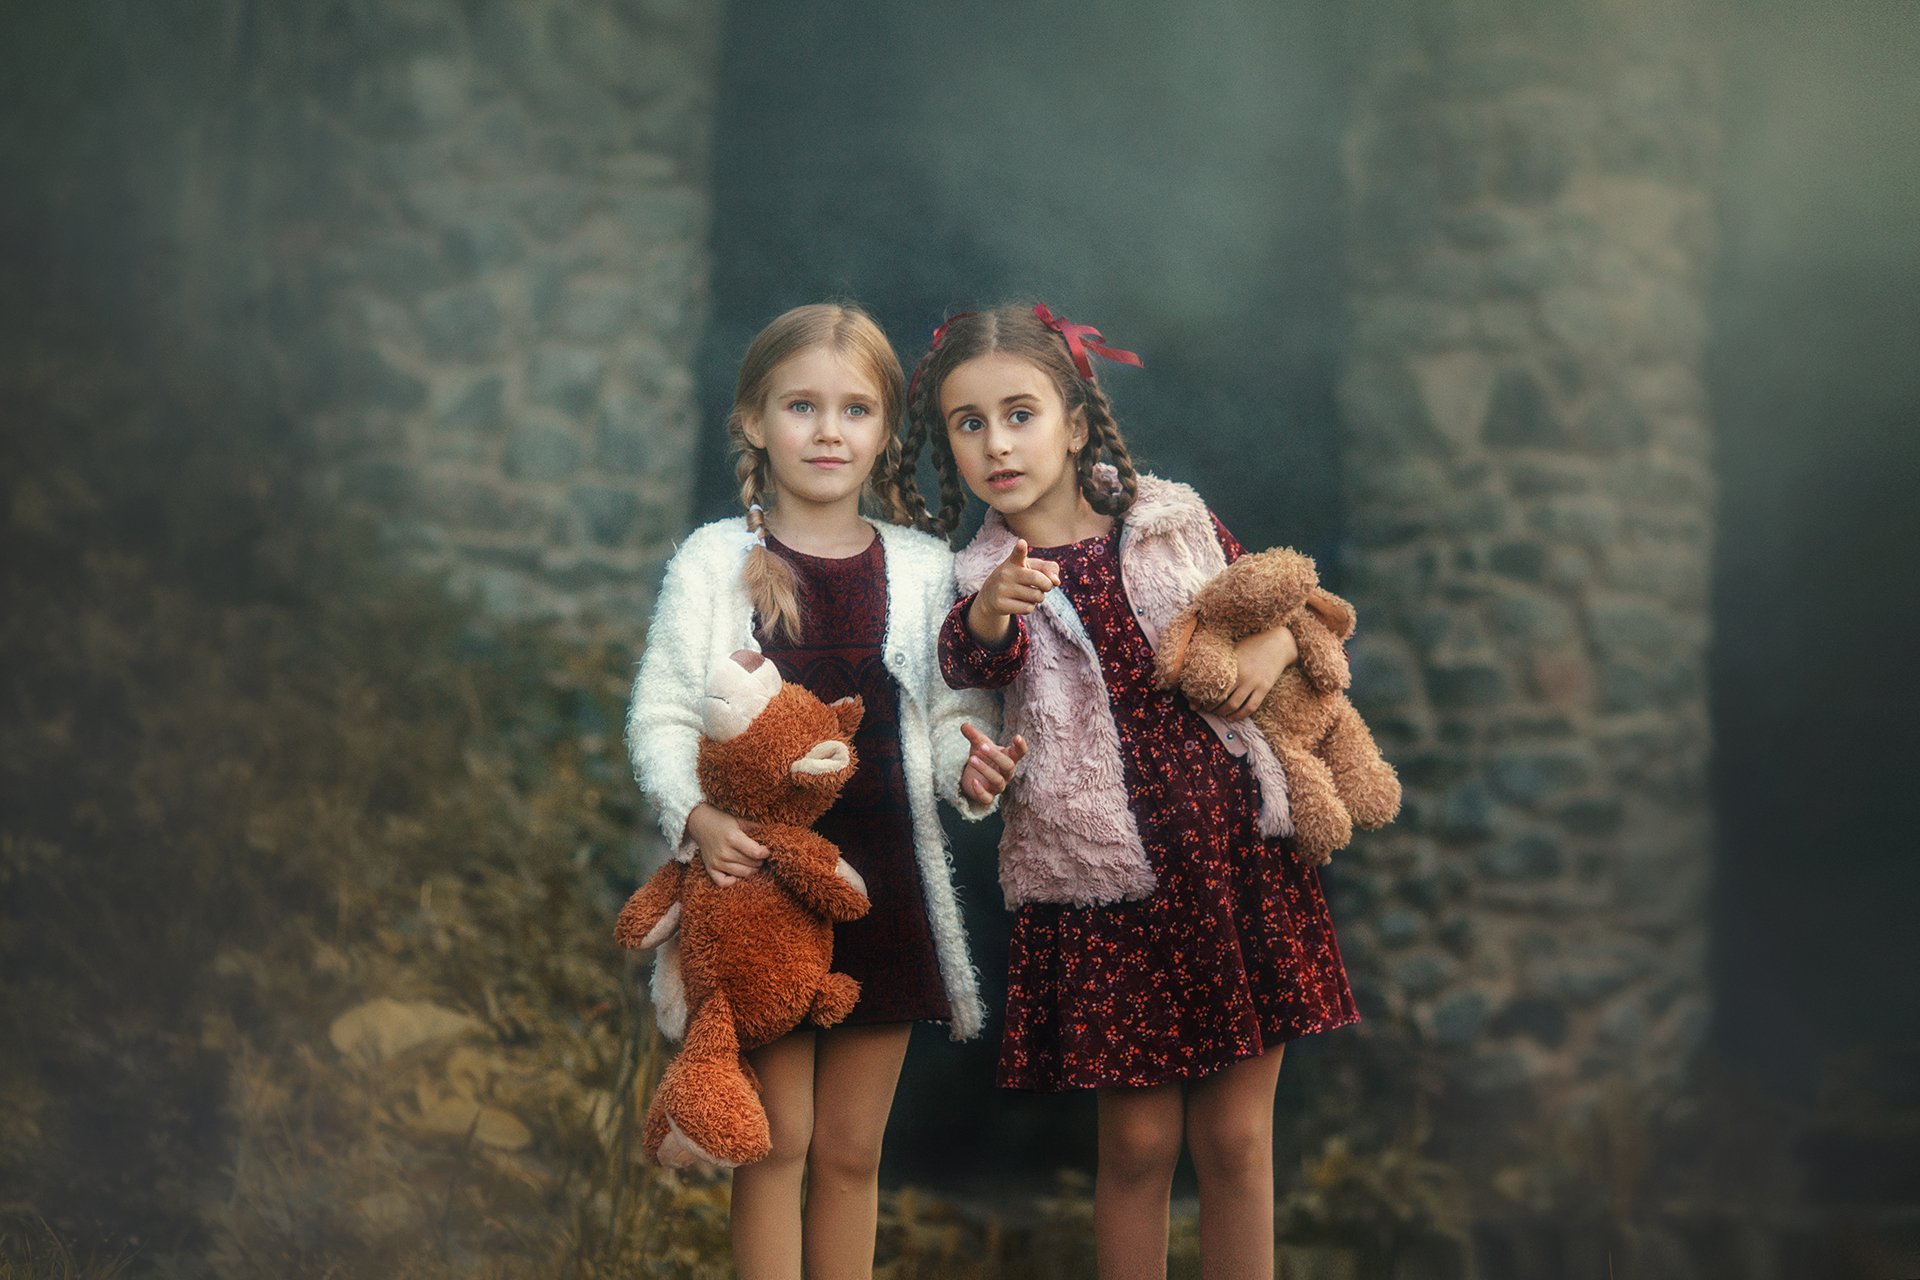 лилия назарова, дети, детский мир, девочка, игрушка, природа, сказка, малышка, собачка, платье, детство, волшебство, фотосессия, Liliya Nazarova